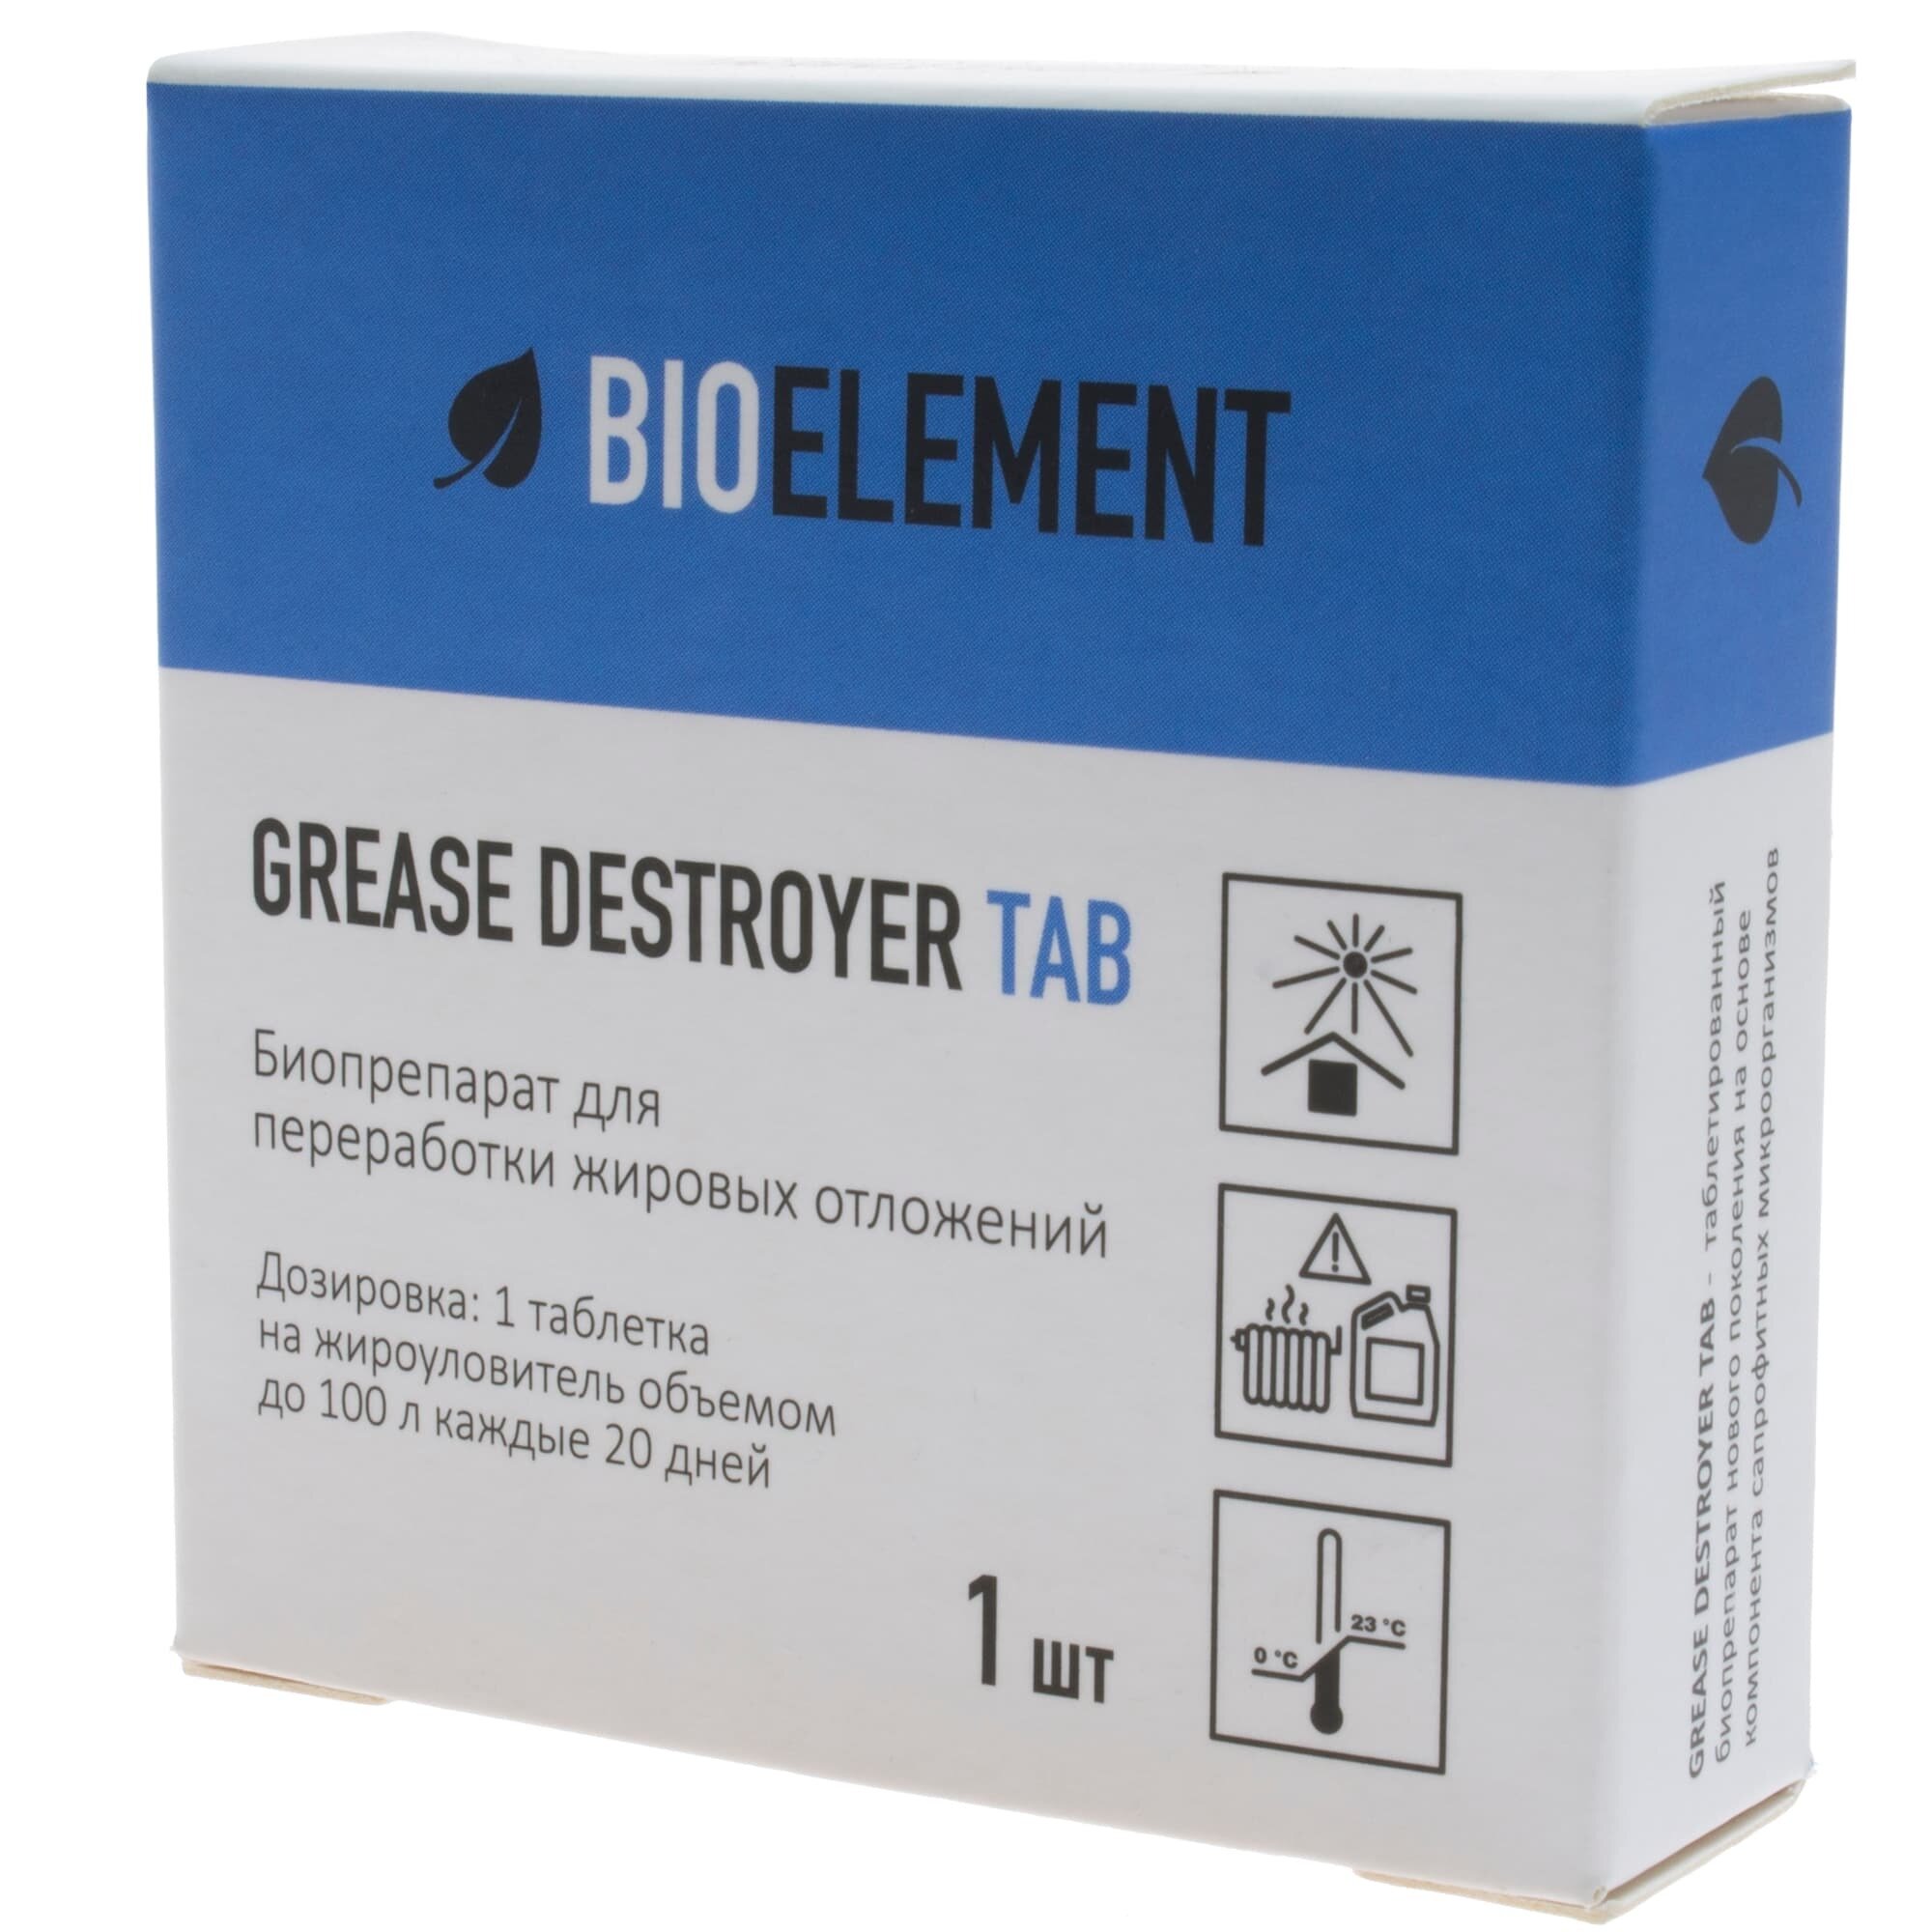 Биоэлемент-Таб 100 г (1 таблетка) Биопрепарат для жироуловителей (Пятый Элемент)